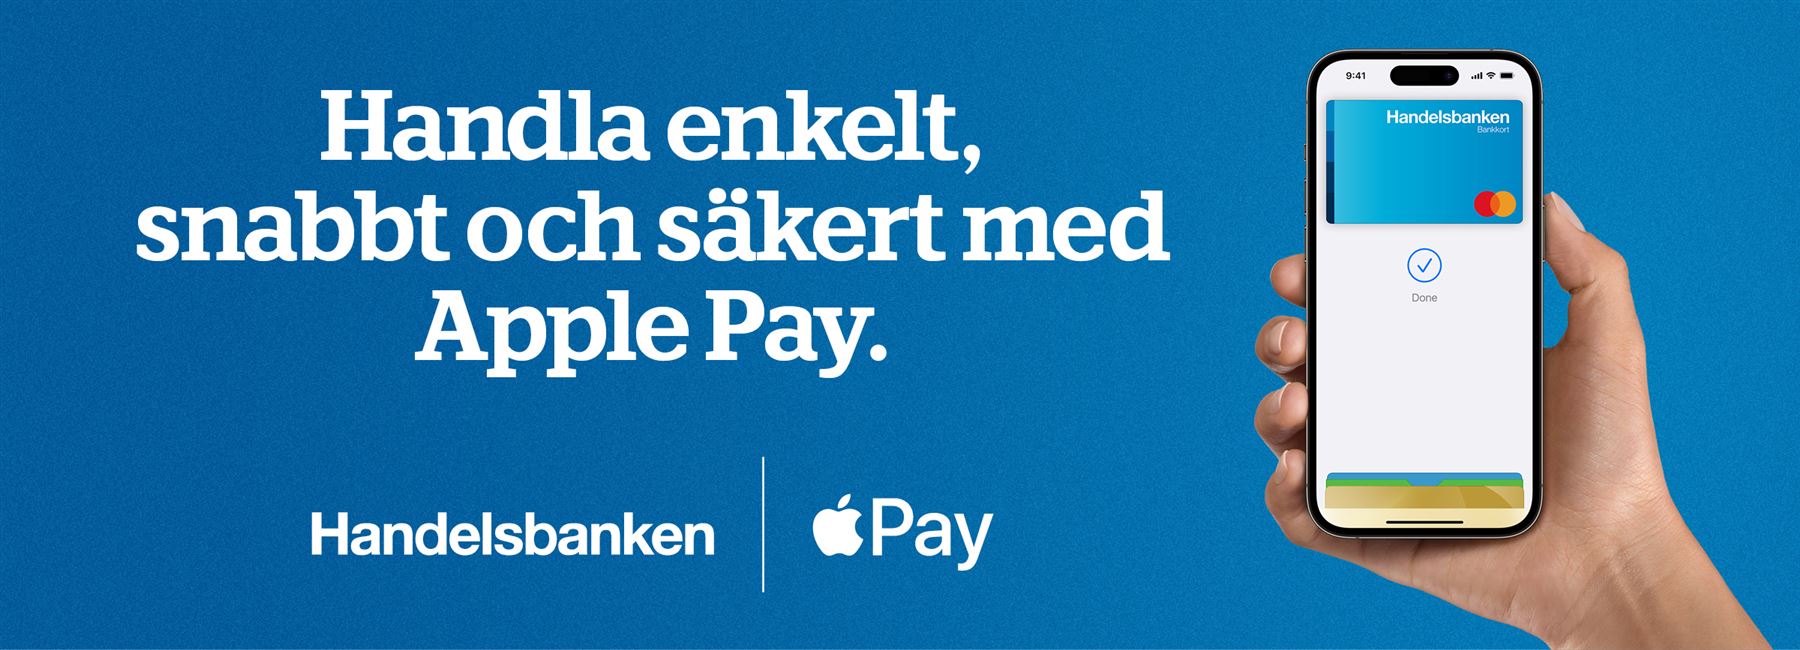 Apple Pay  - Handelsbanken.se